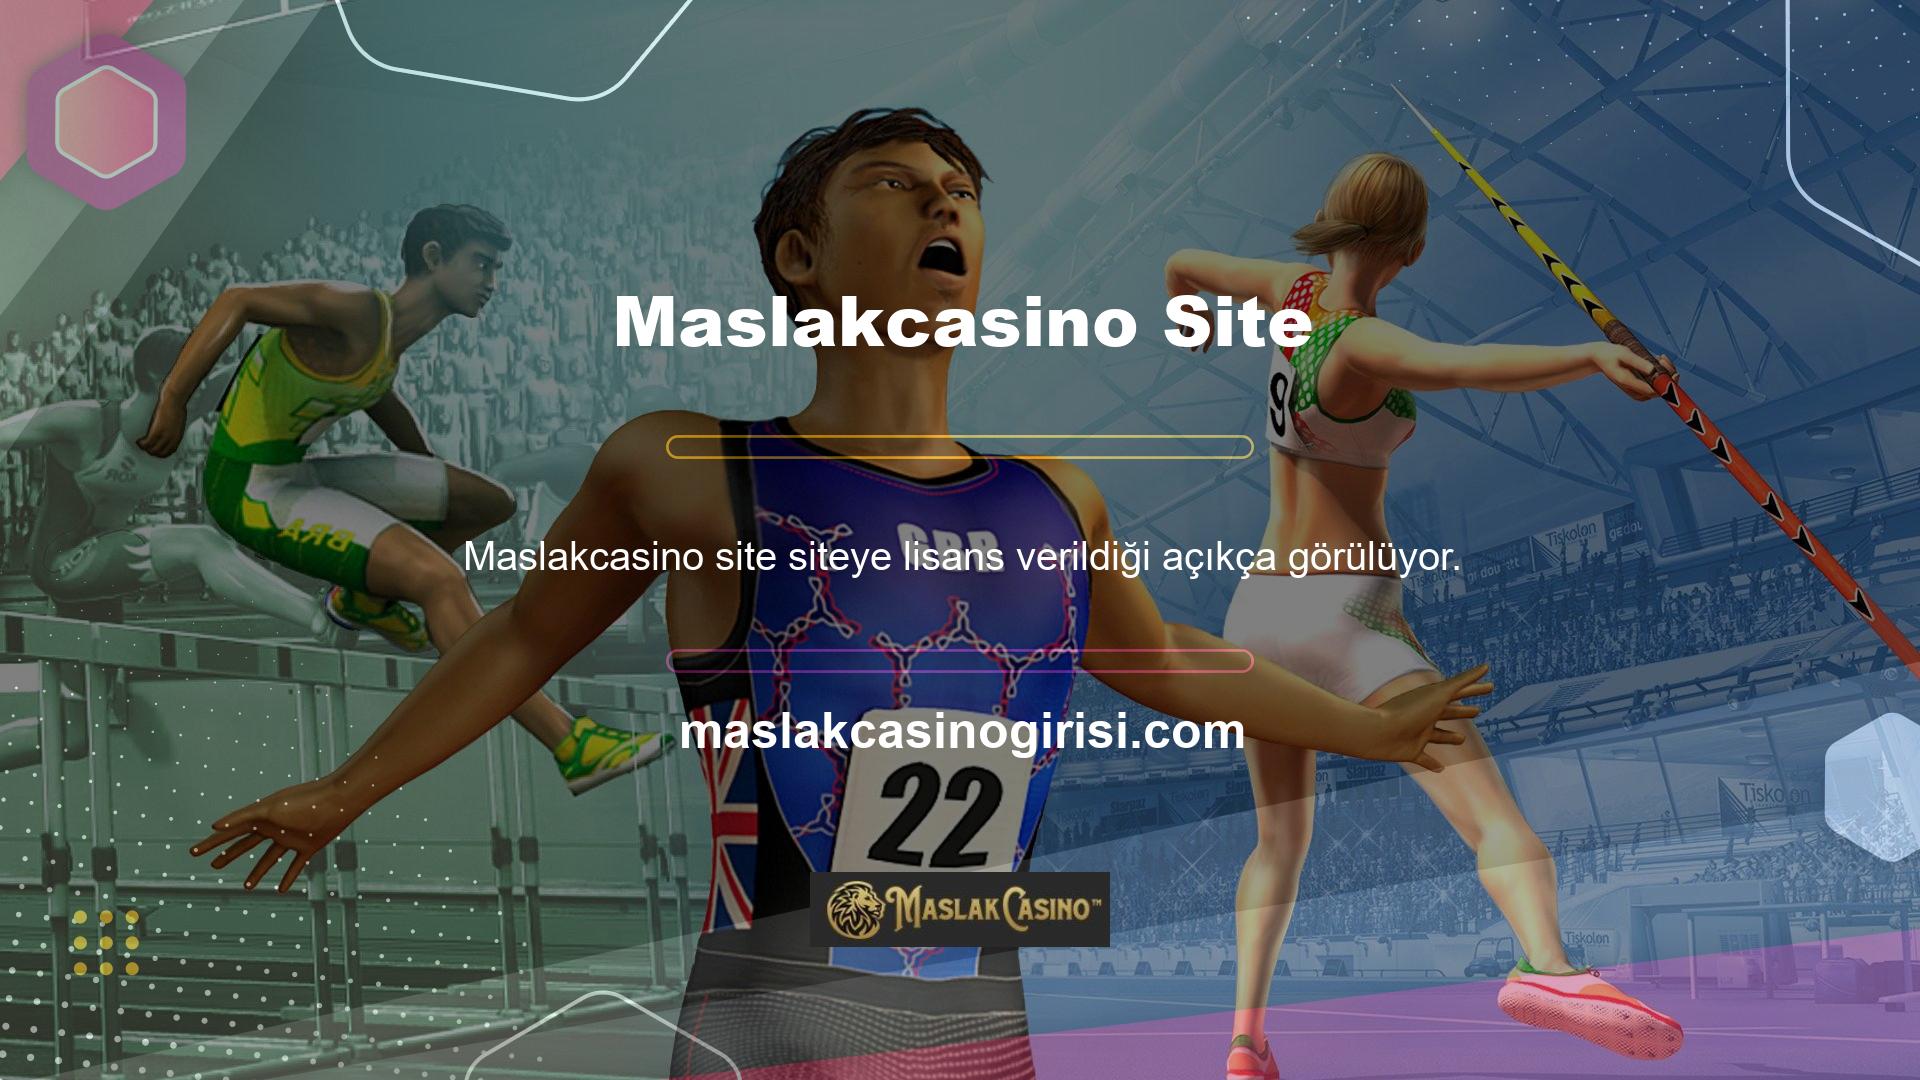 Maslakcasino web sitesi, satın alma lisansları, platform hizmetine ilişkin çok sayıda olumlu geri bildirim, kesintisiz bağlantı ve büyük şirketlerin kapsamlı altyapı kullanımı nedeniyle güvenilir sayılabilir